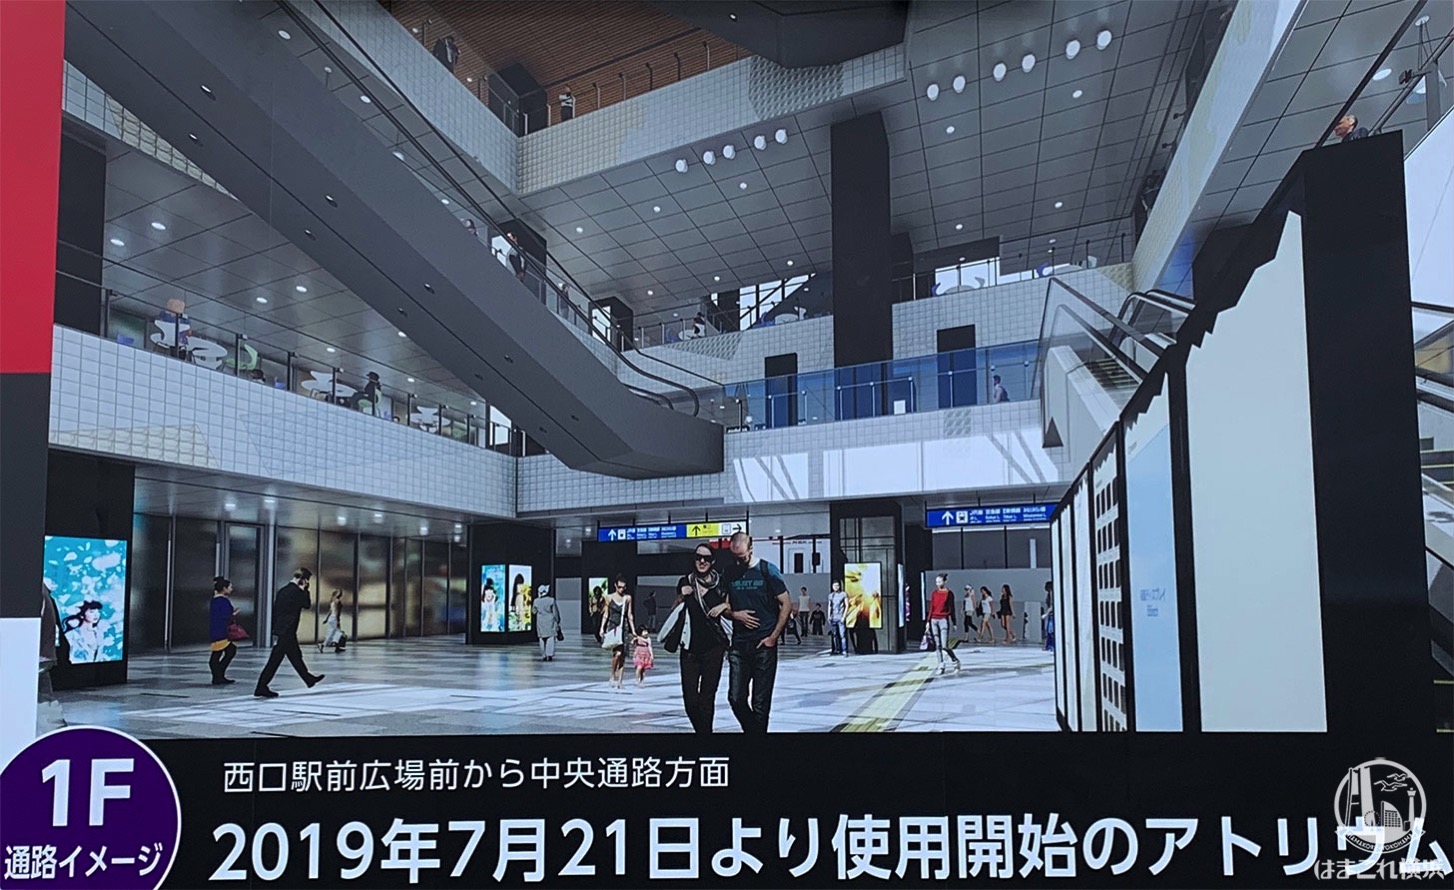 横浜駅西口に大規模空間「アトリウム」誕生！2019年7月21日より使用開始